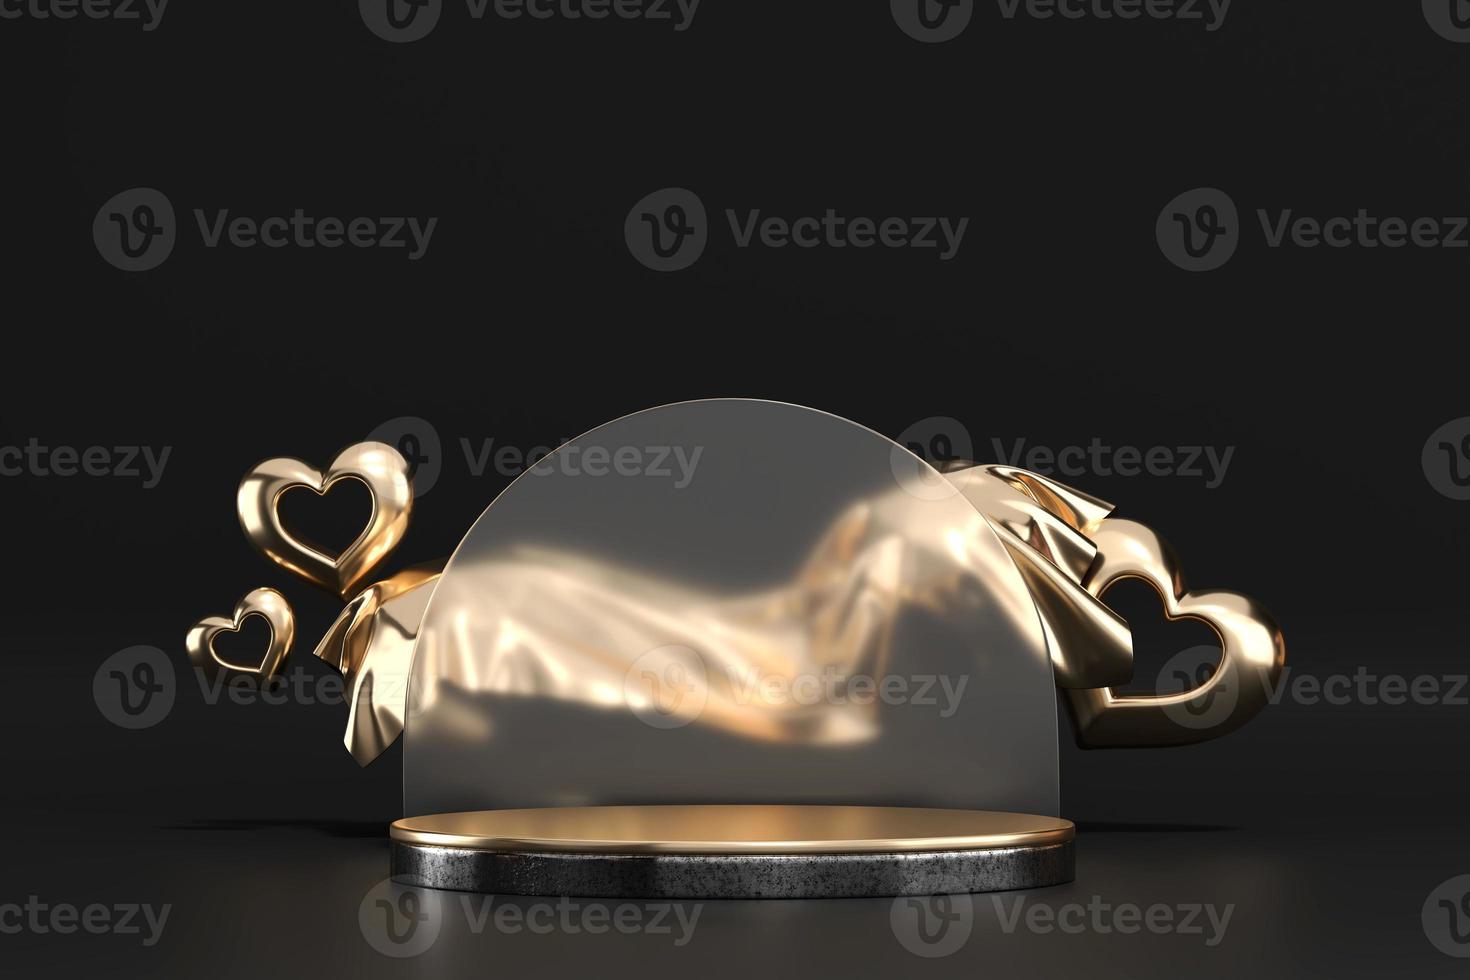 Alla hjärtans dag guld scen podium håna upp med hjärtprodukt display display foto